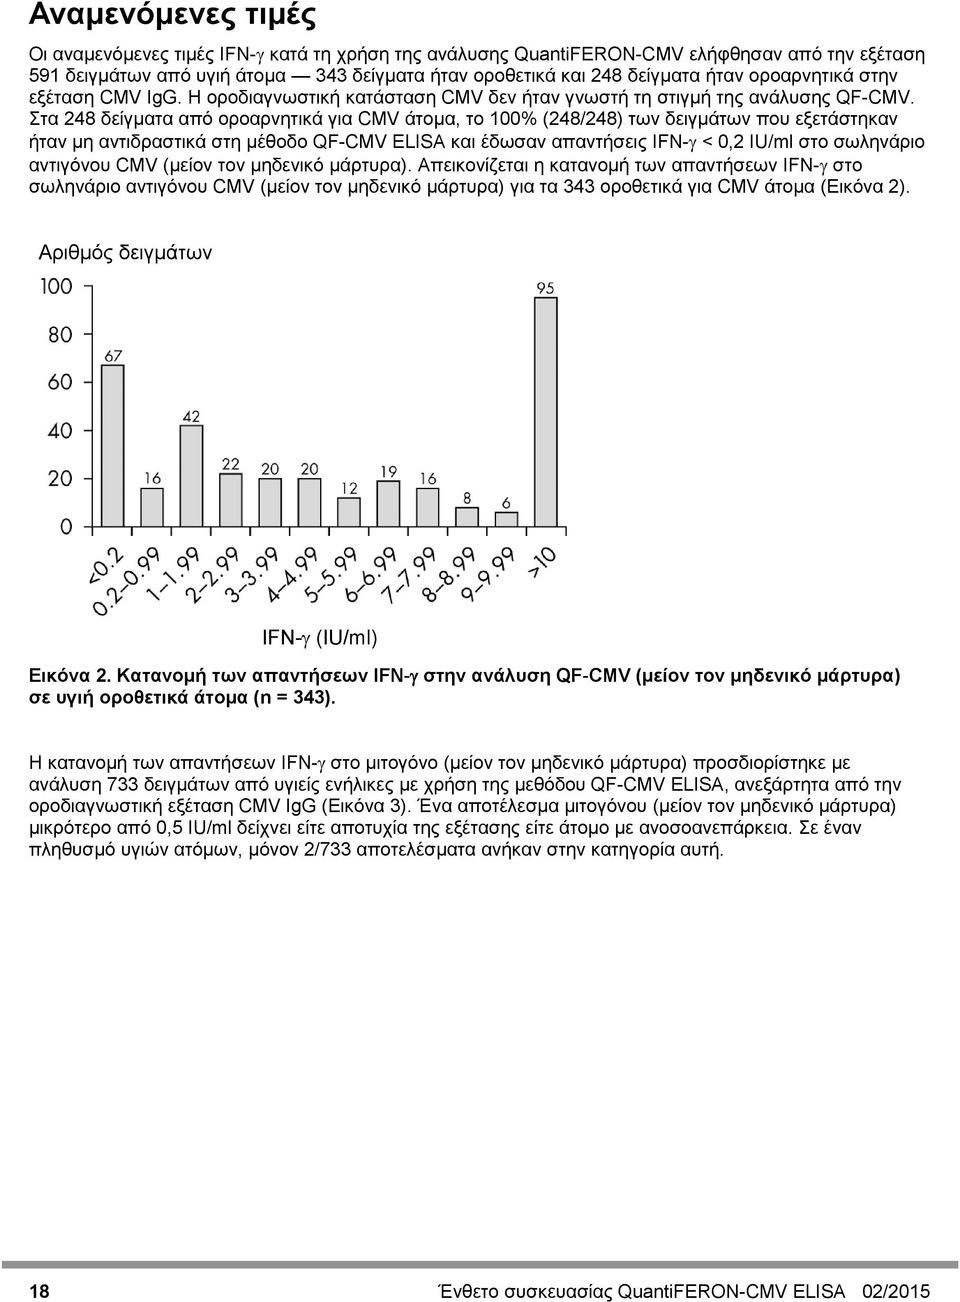 Στα 248 δείγματα από οροαρνητικά για CMV άτομα, το 100% (248/248) των δειγμάτων που εξετάστηκαν ήταν μη αντιδραστικά στη μέθοδο QF-CMV ELISA και έδωσαν απαντήσεις IFN-γ < 0,2 IU/ml στο σωληνάριο